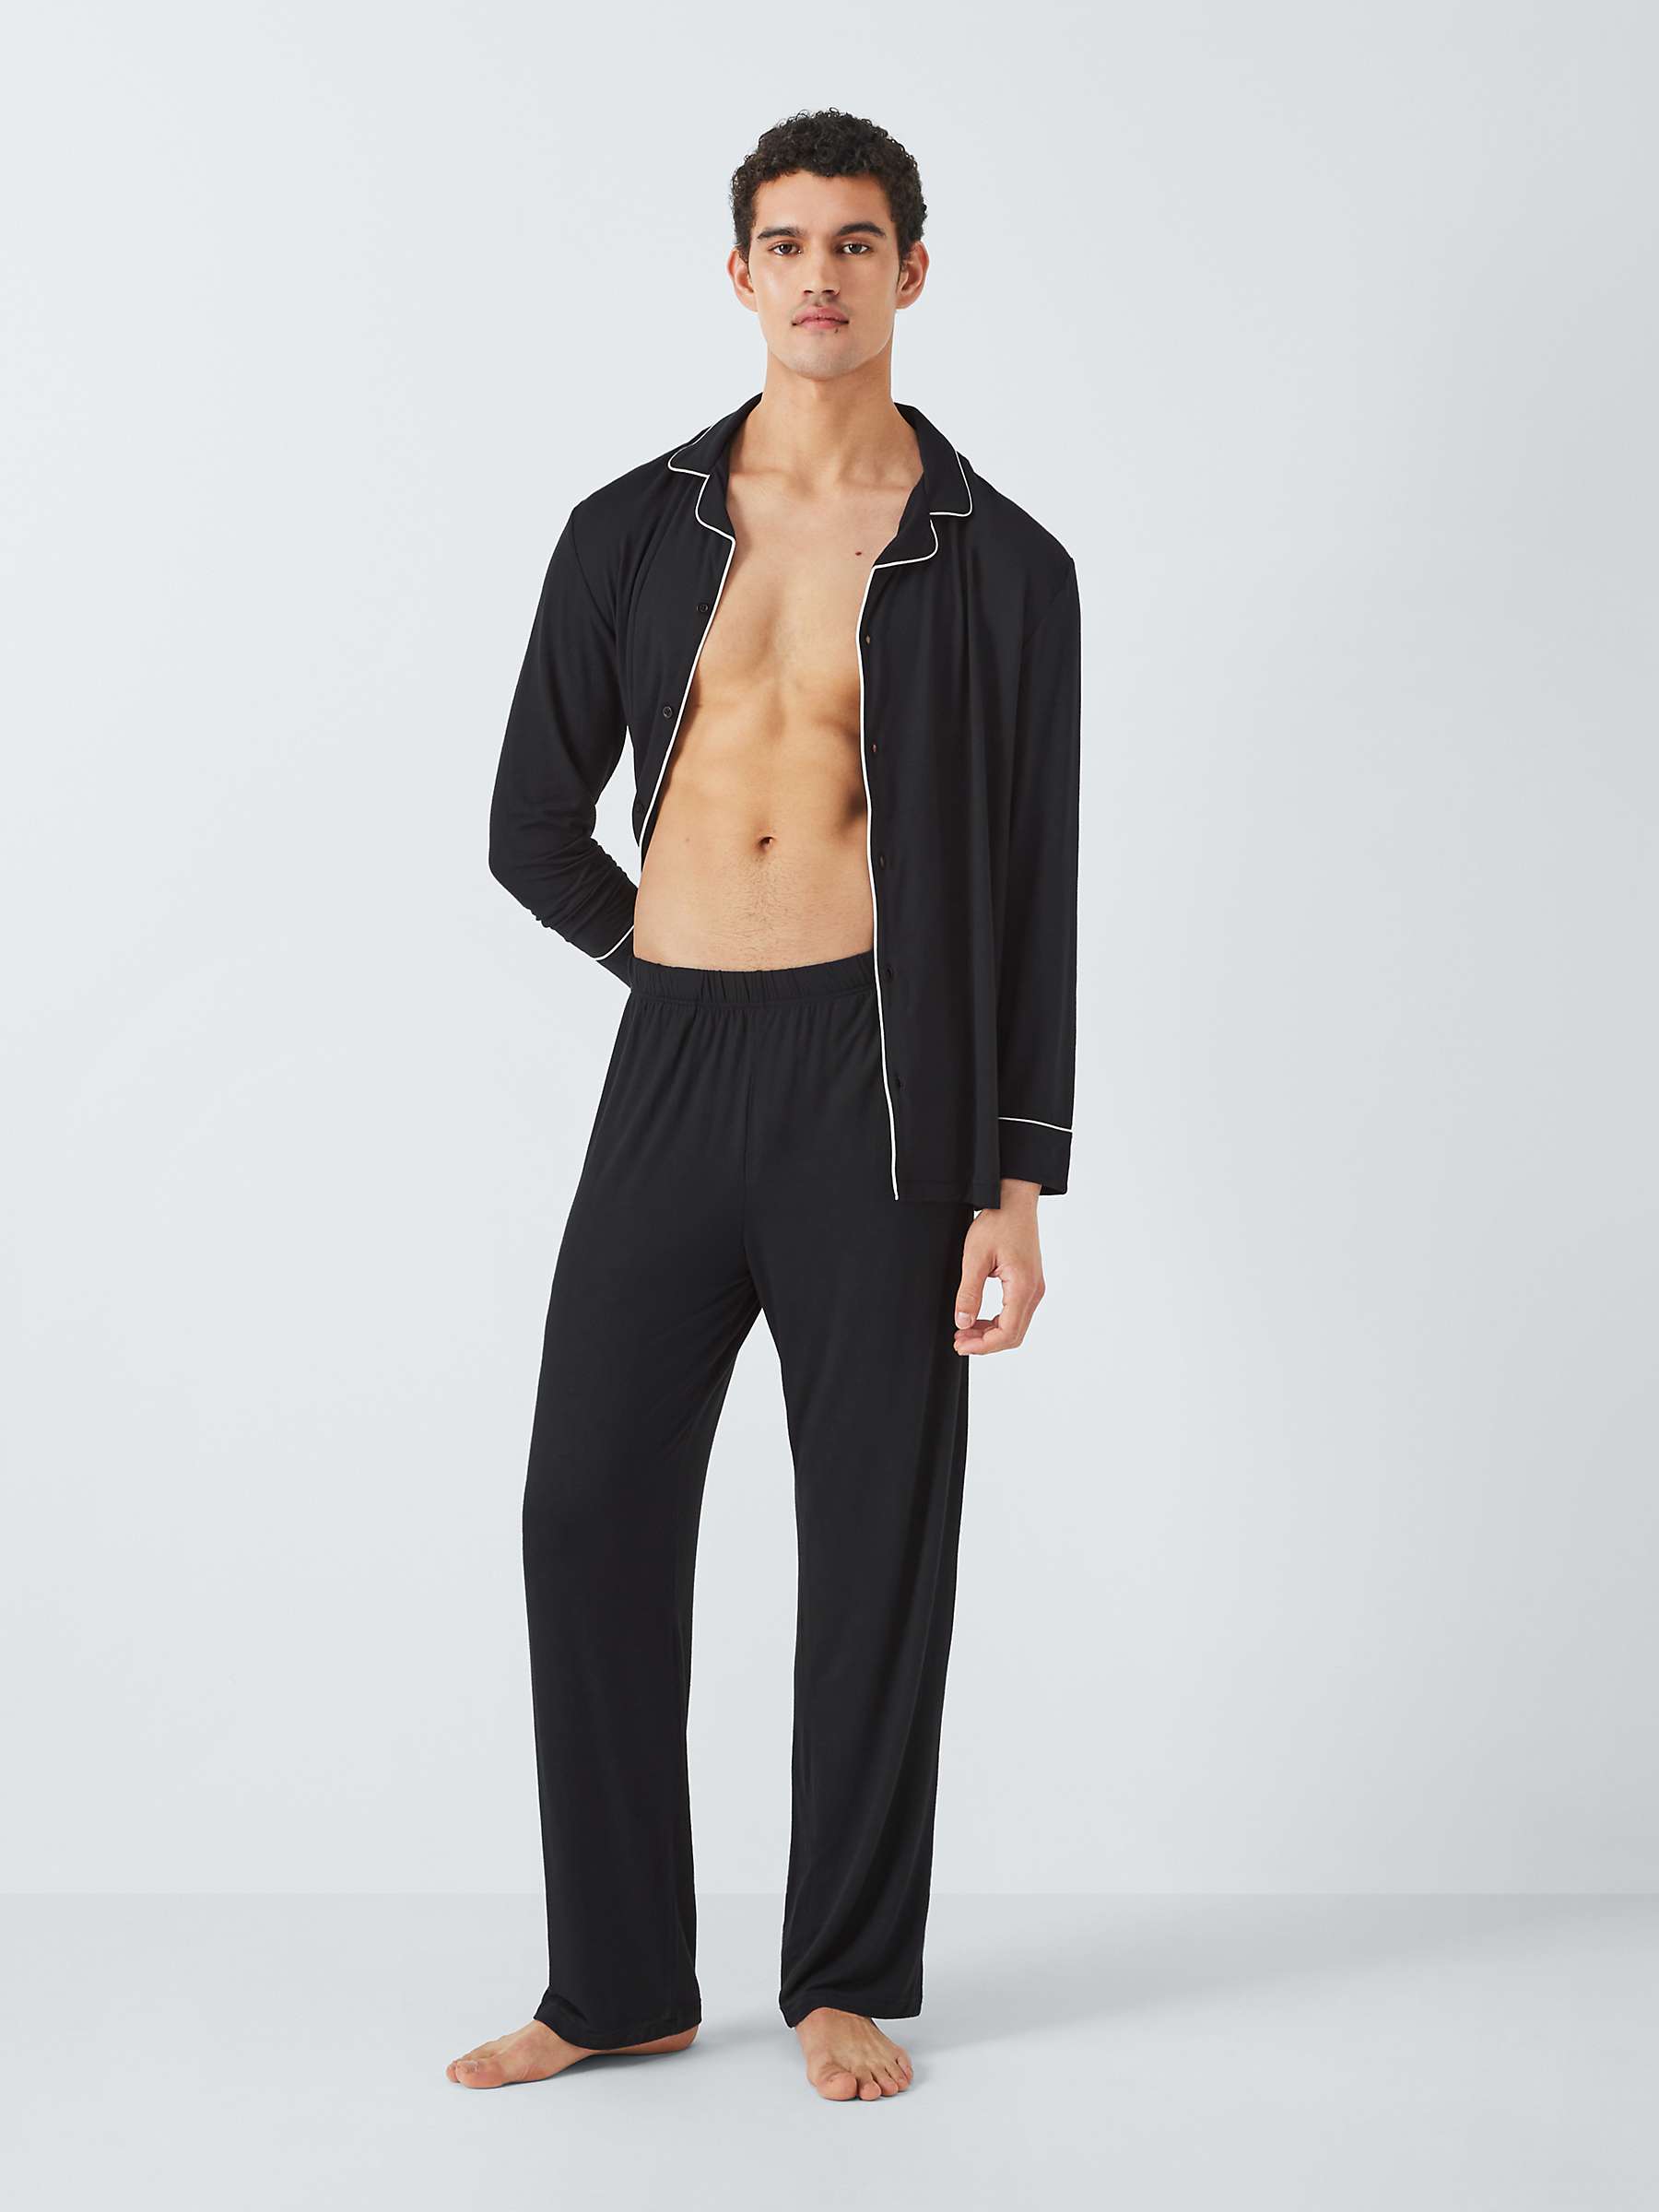 Buy John Lewis Modal Pyjama Set, Black Online at johnlewis.com